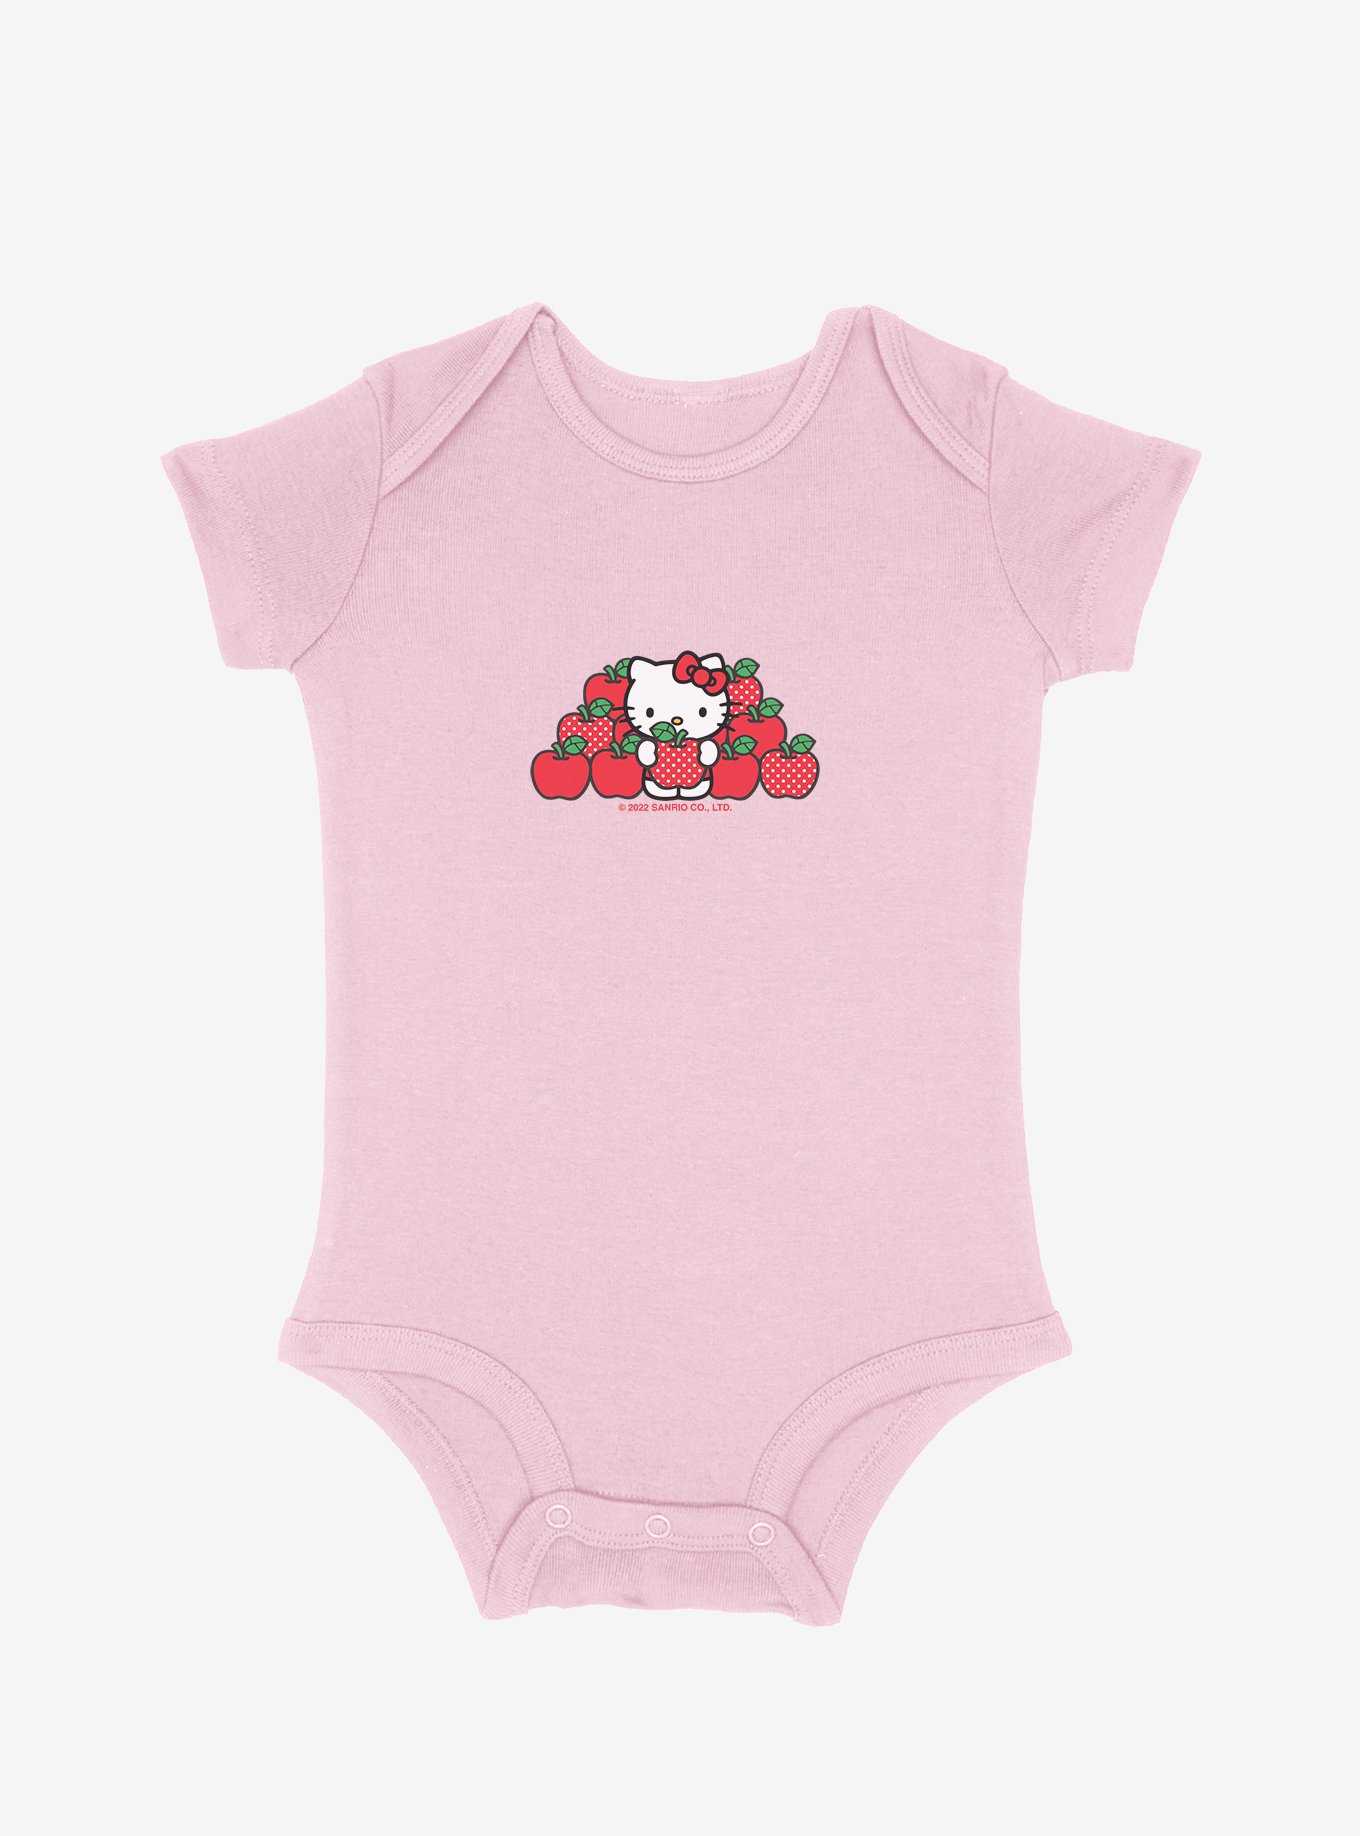 Hello Kitty Apple Picking Infant Bodysuit, , hi-res